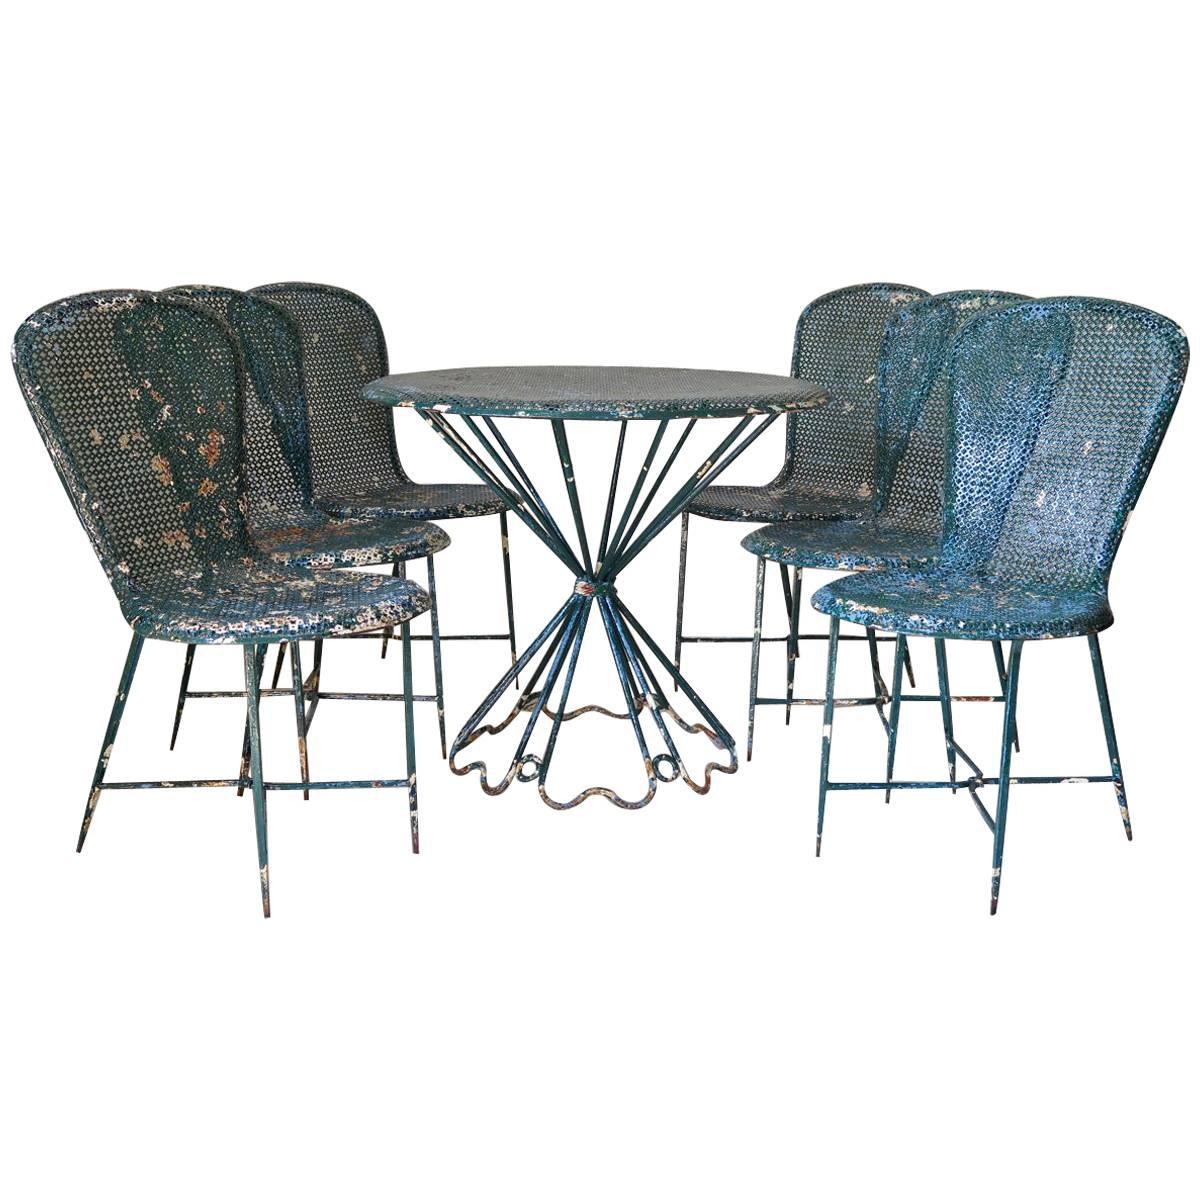 Rare Matégot "Palm Beach" Table and Chair Set, France, 1950s